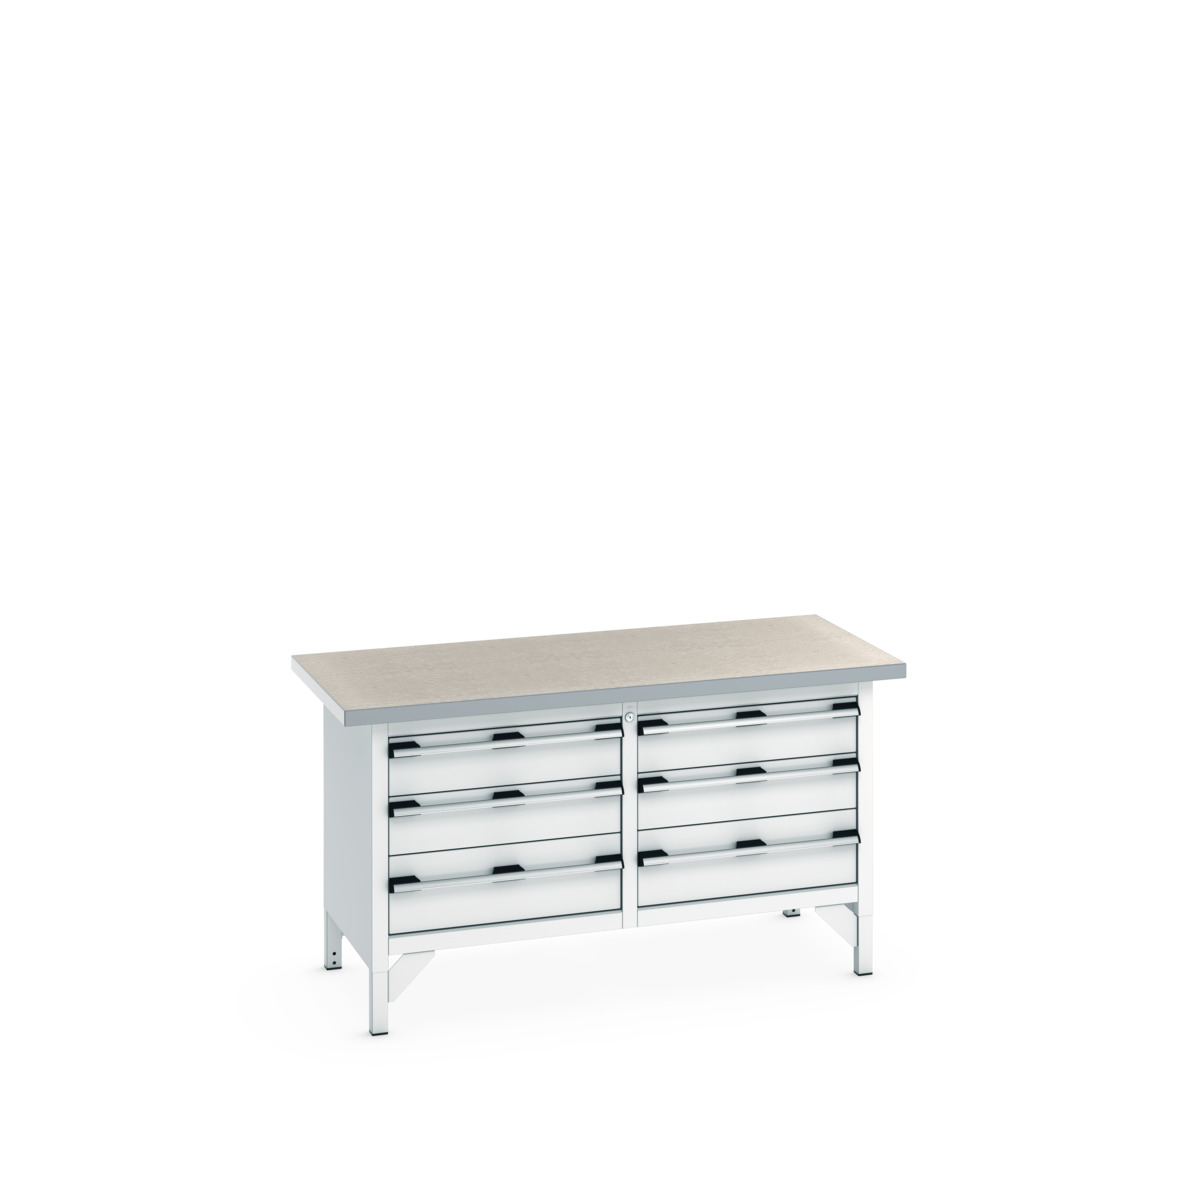 41002033.16V - cubio storage bench (lino)